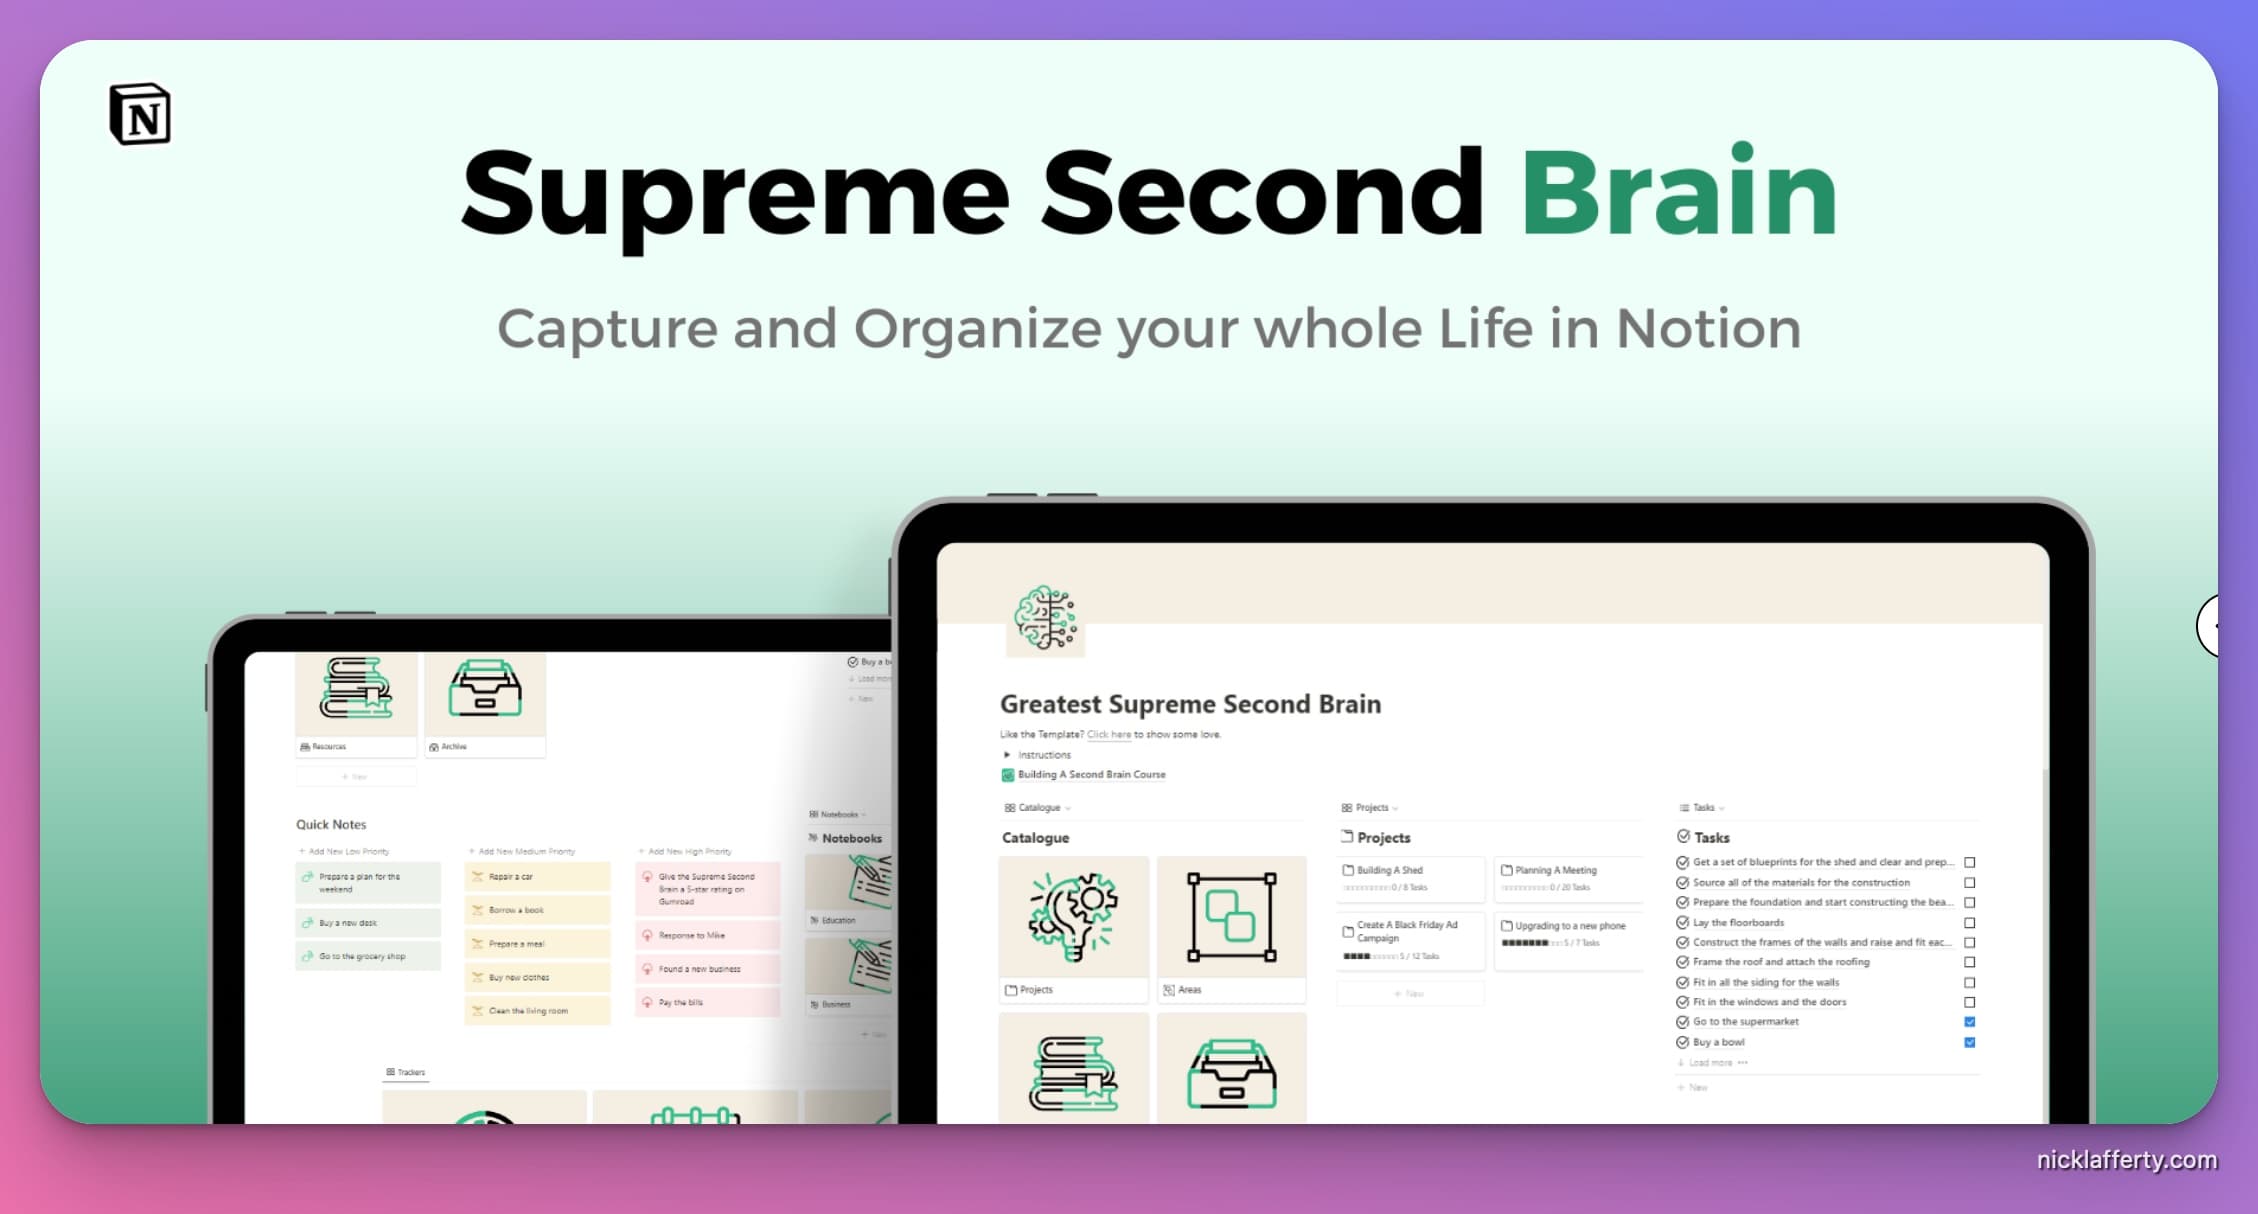 Supreme Second Brain Template